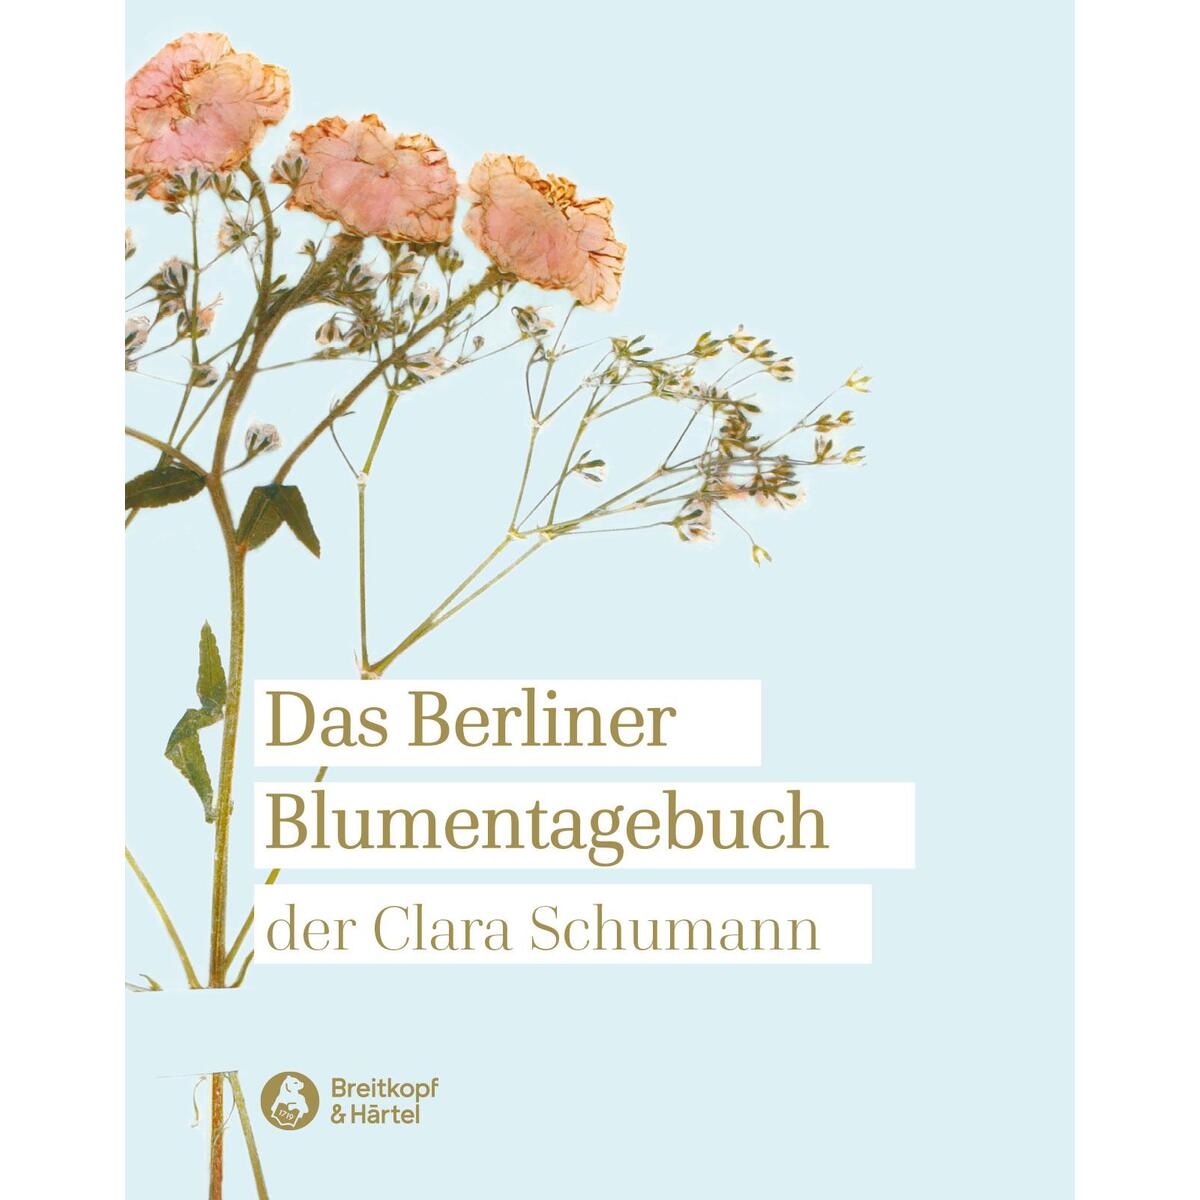 Das Berliner Blumentagebuch der Clara Schumann 1857 - 1859 von Breitkopf & Härtel